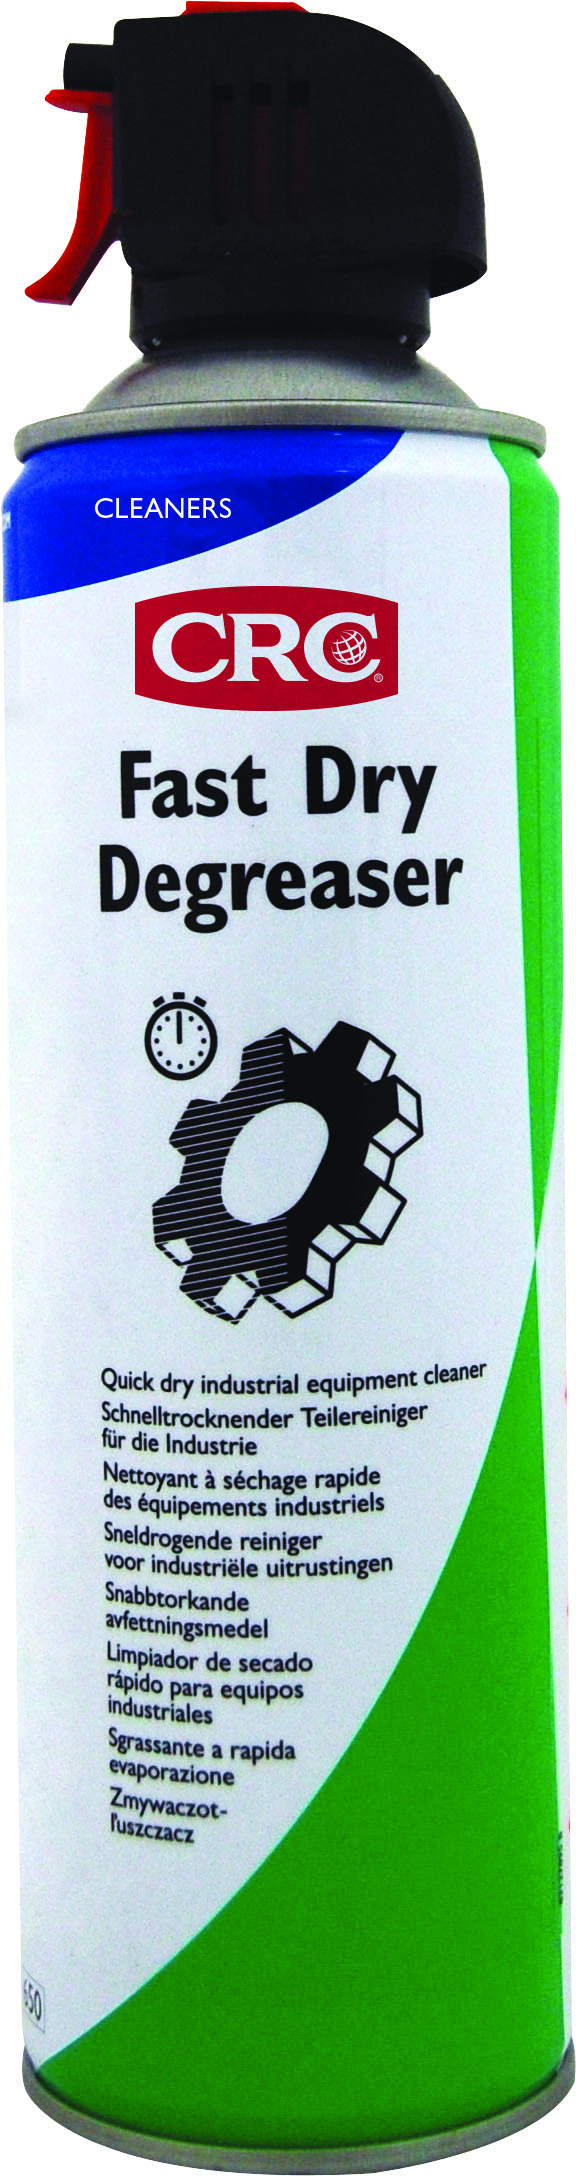 CRC Fast Dry Degreaser, 500 ml Spraydose